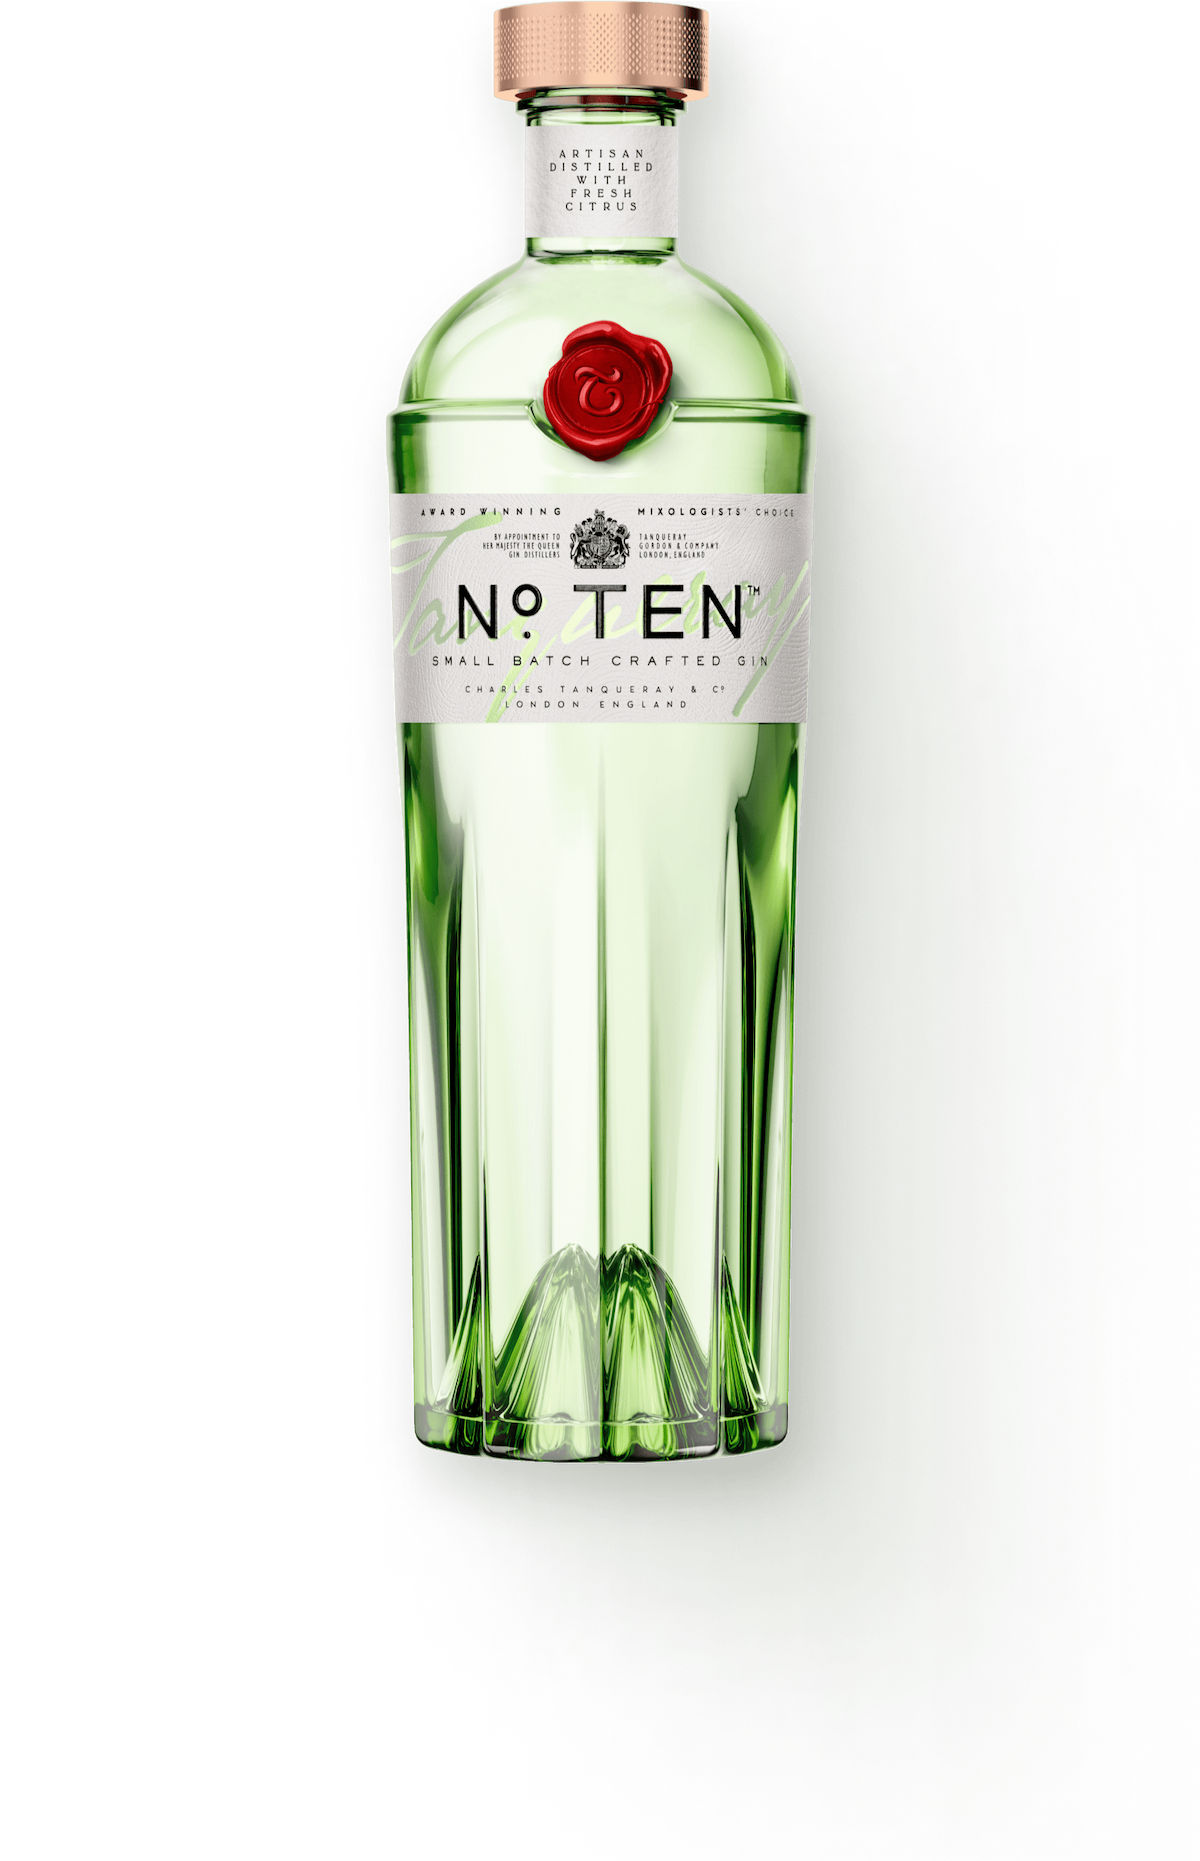 A bottle of Tanqueray No. TEN.